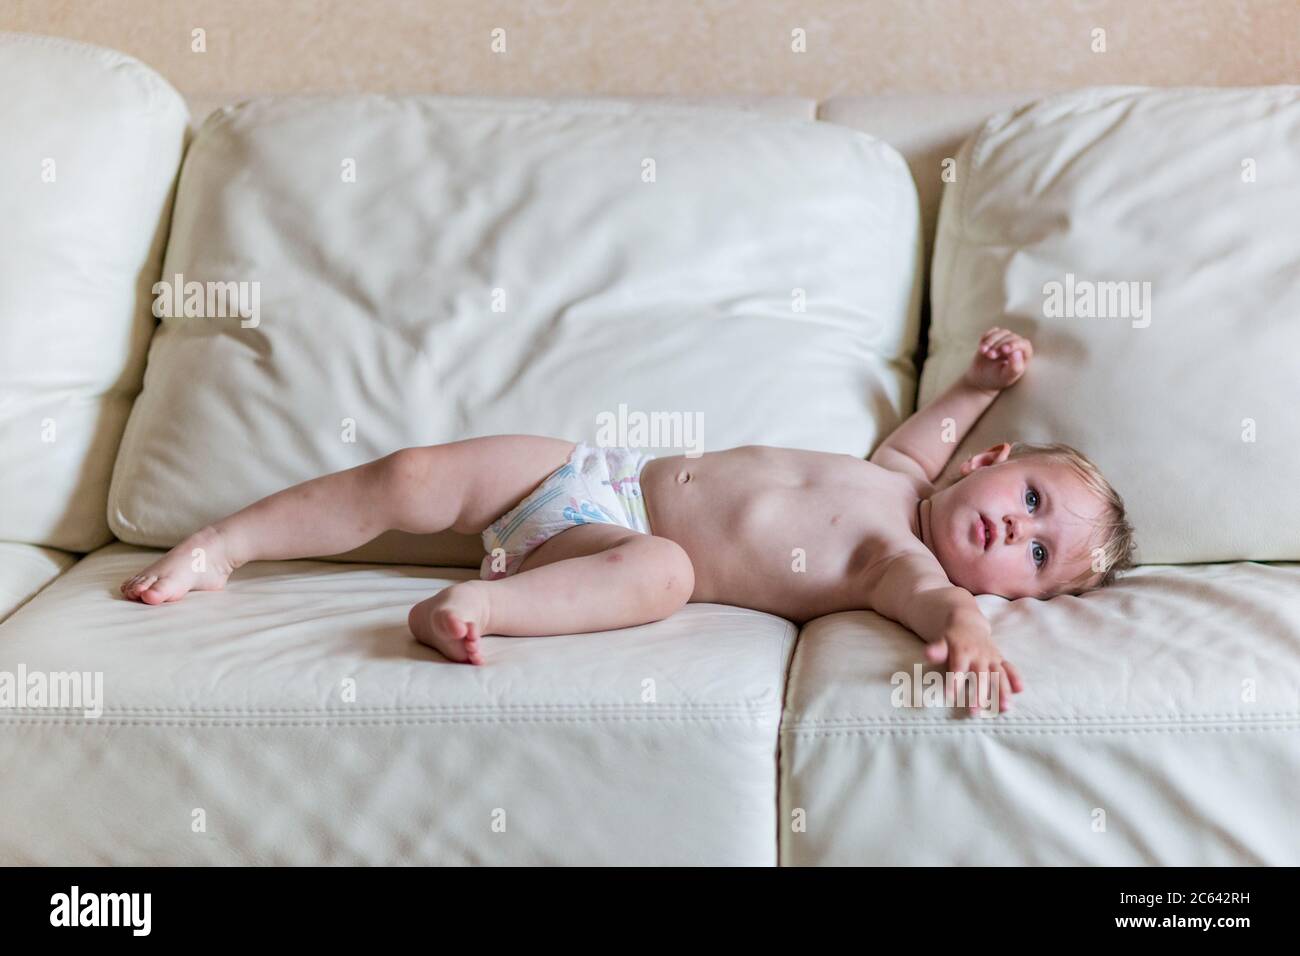 Nettes Baby Mädchen in Windeln auf dem Bett liegen Stockfotografie - Alamy